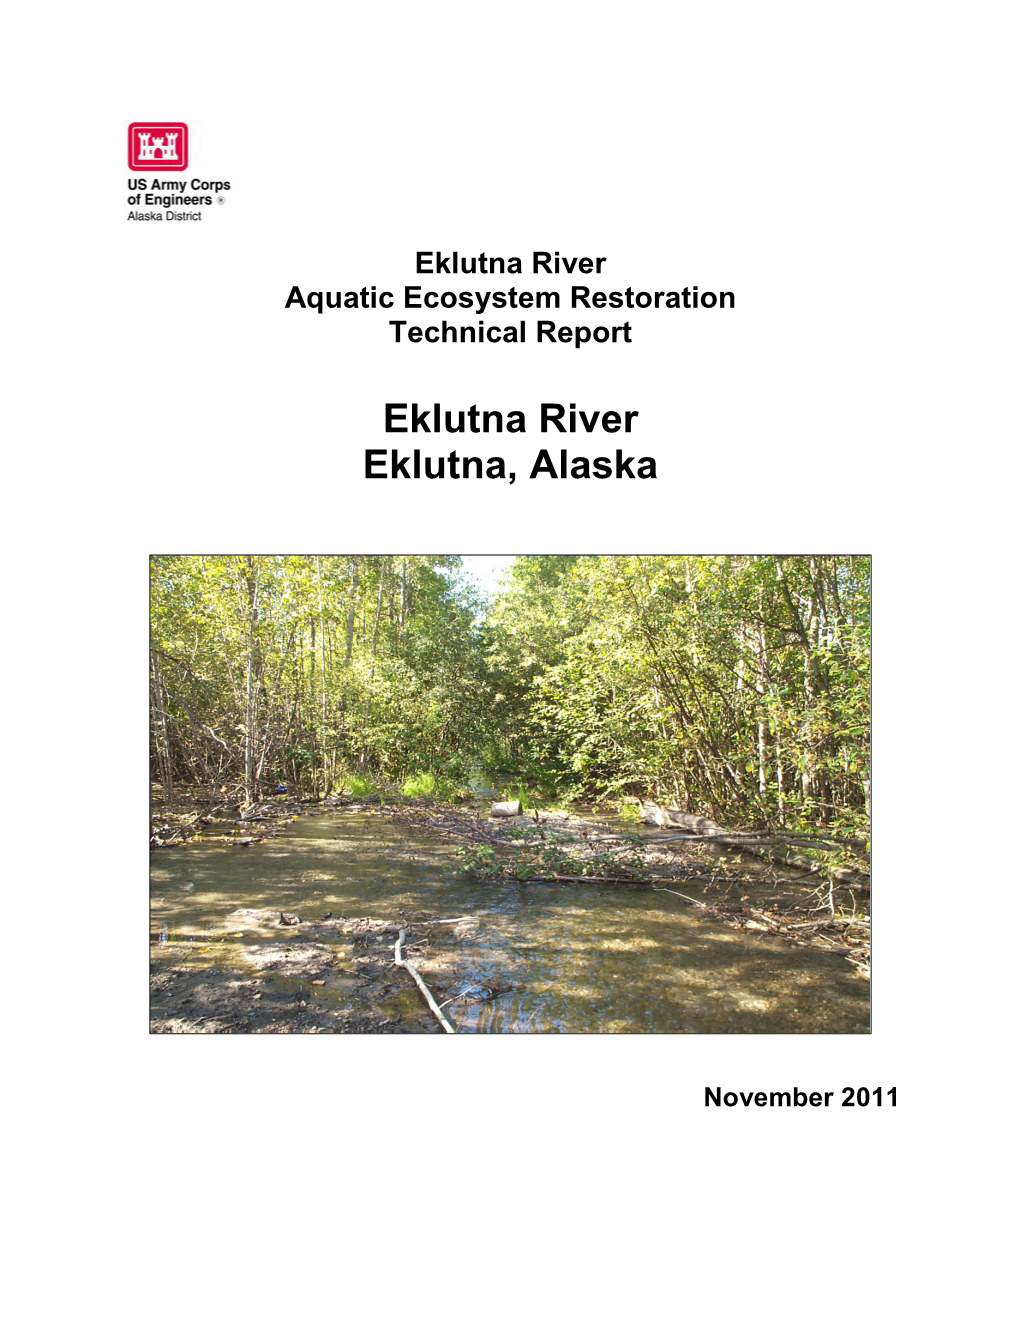 Eklutna River Aquatic Ecosystem Restoration Technical Report